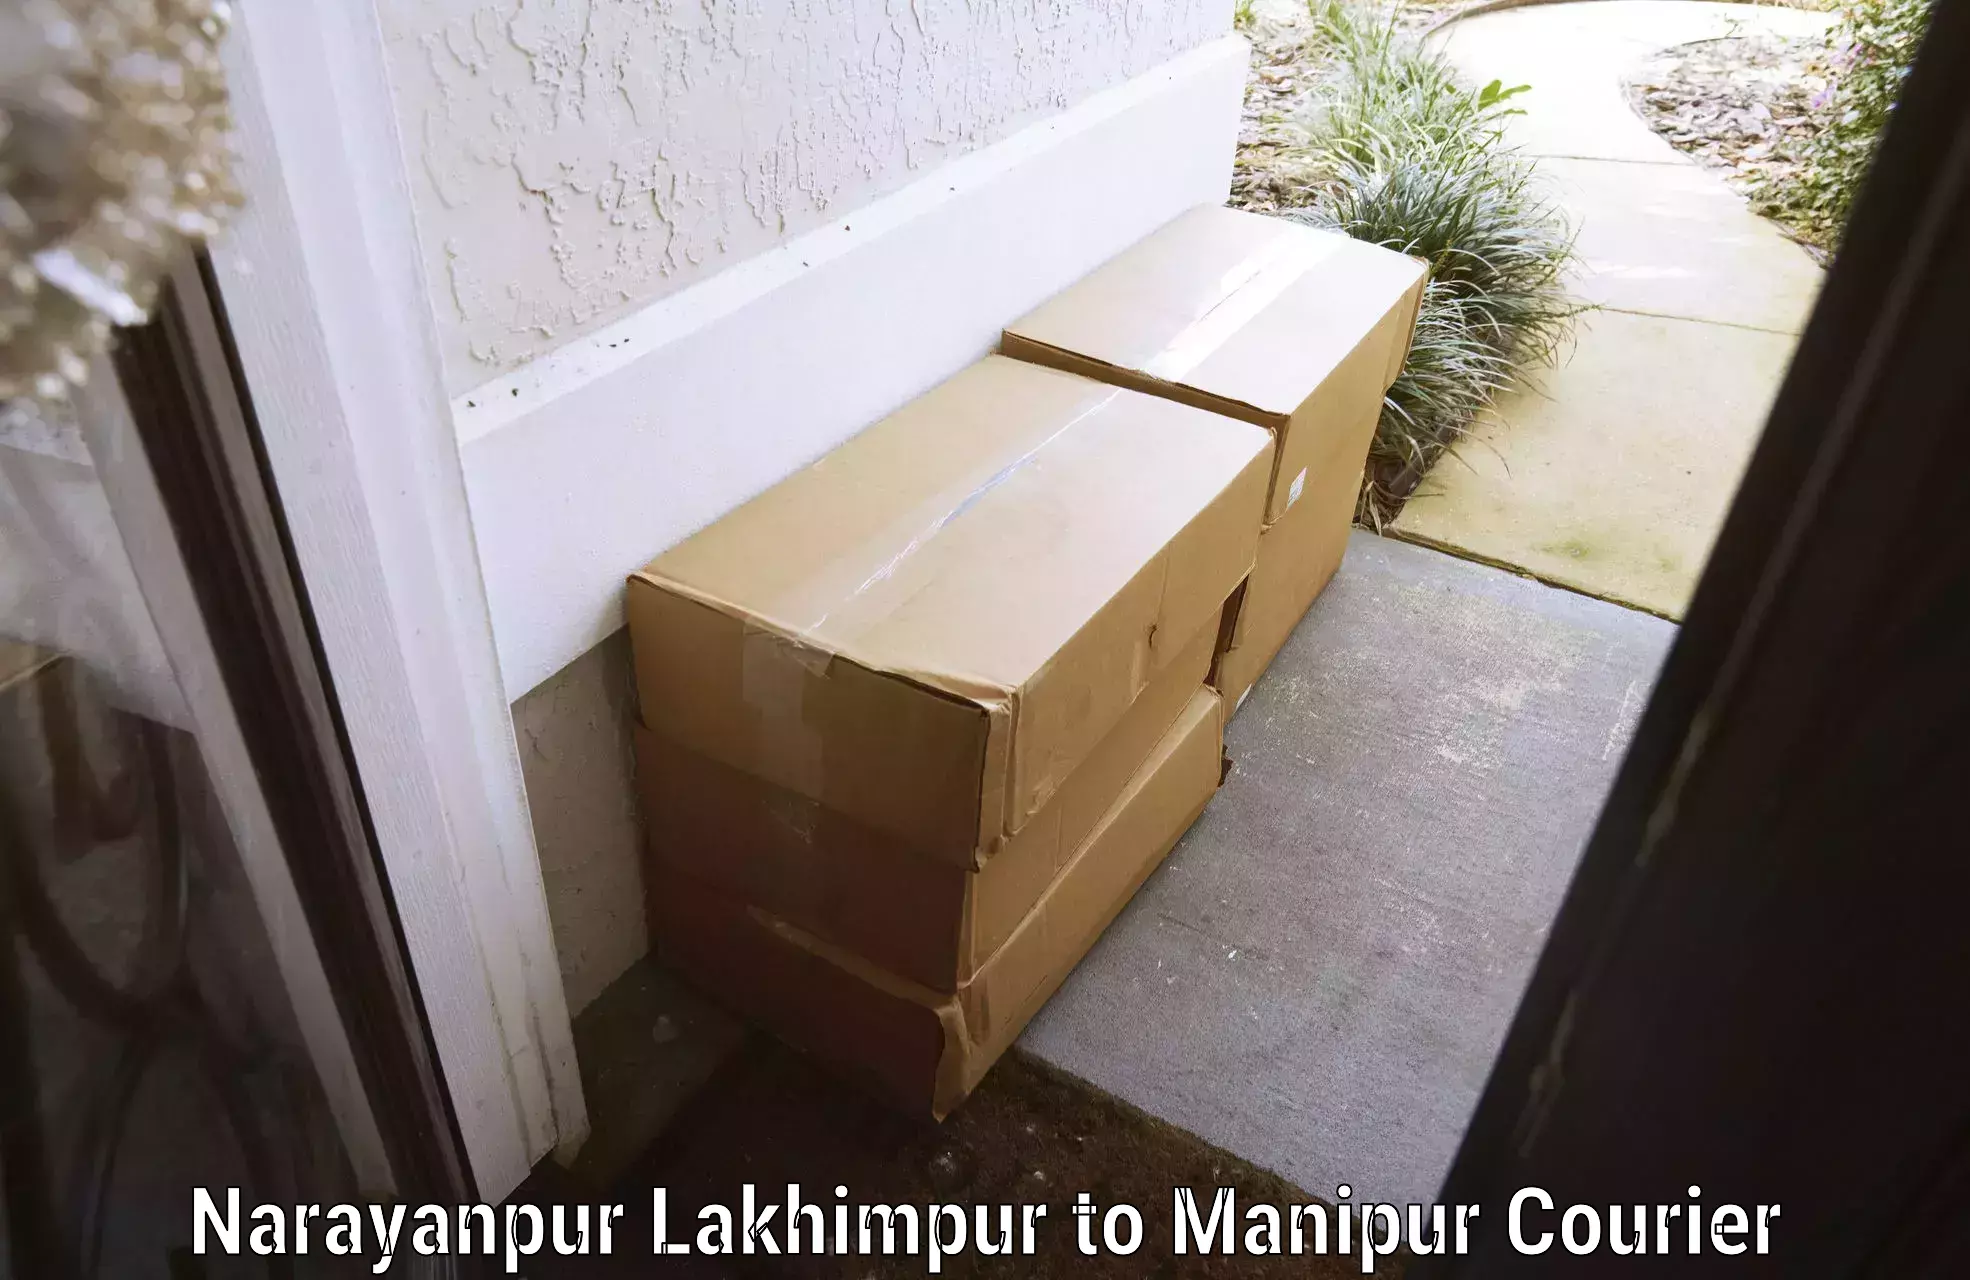 Hassle-free luggage shipping Narayanpur Lakhimpur to Jiribam